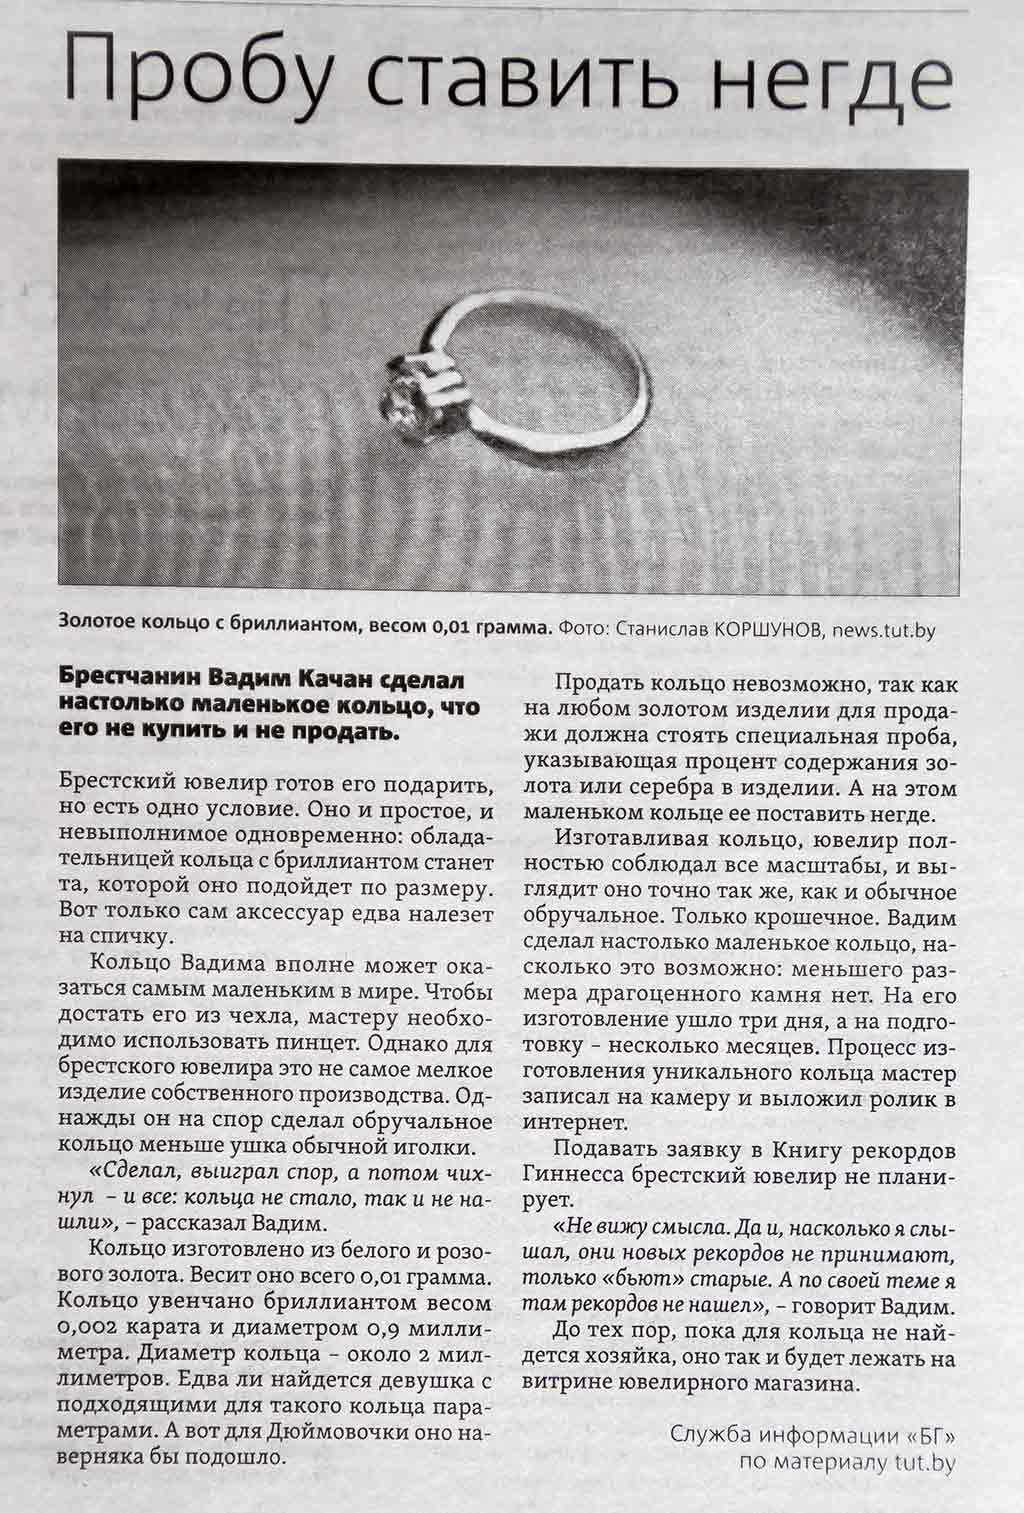 Брестские газеты о Вадиме Качане: статья о самом маленьком кольце, которое невозможно продать